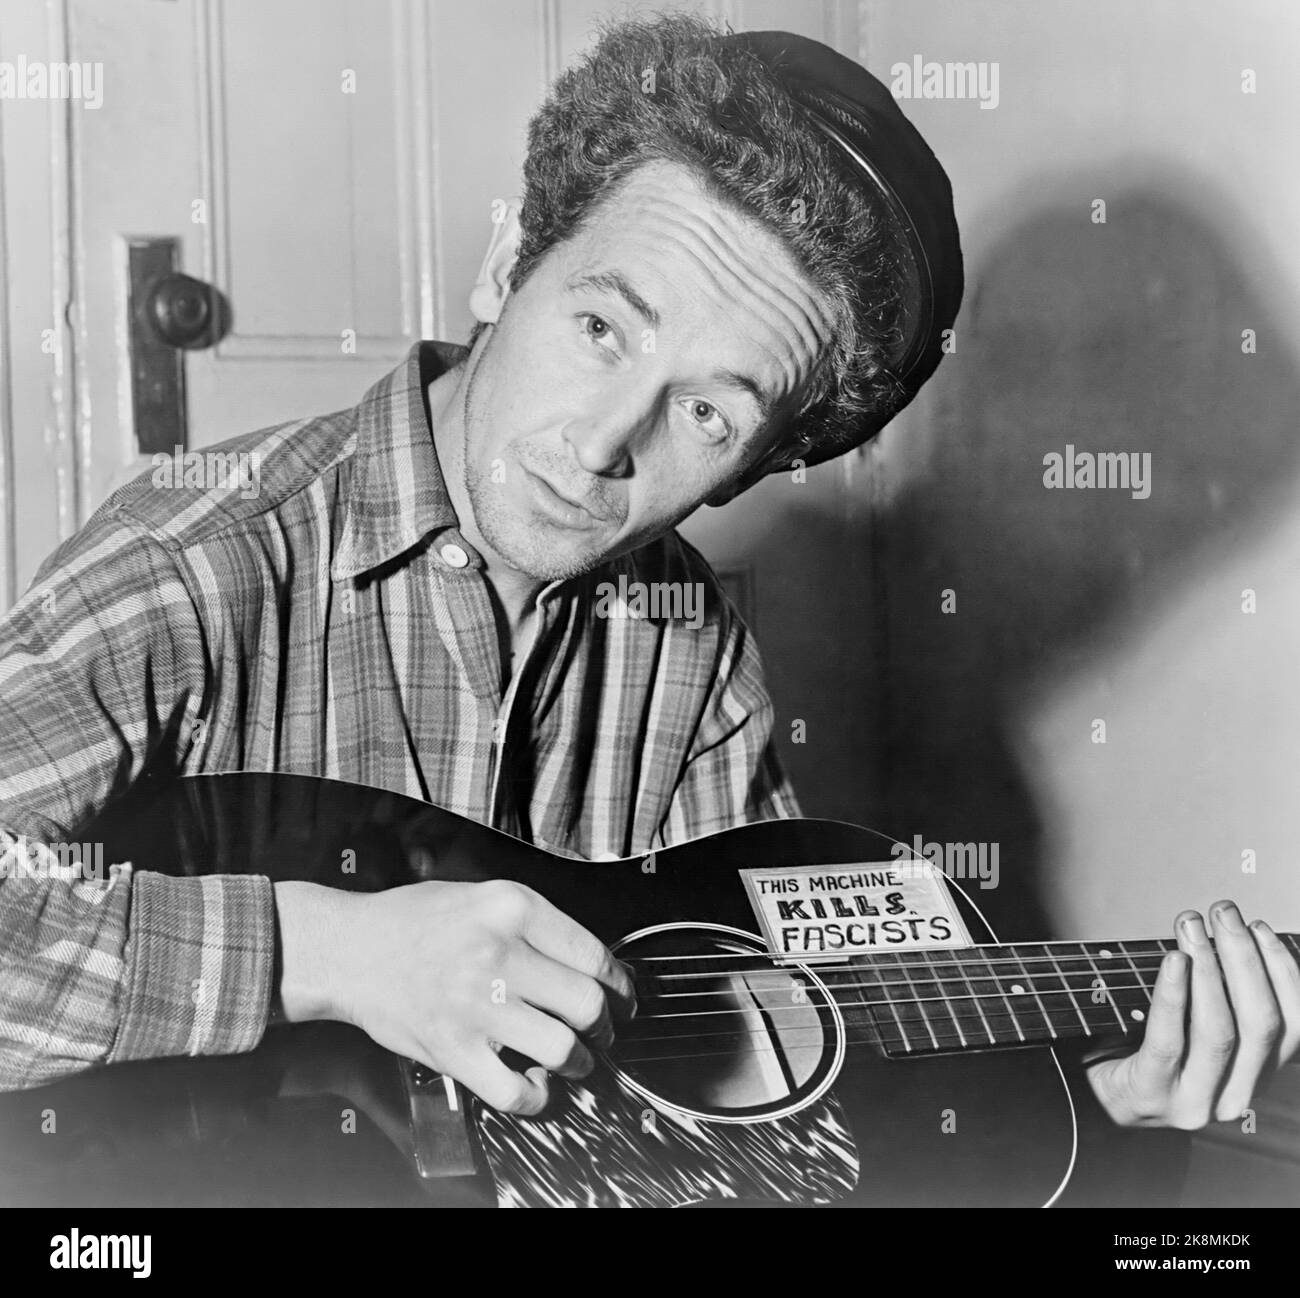 Woody Guthrie - photo emblématique de Al Aumuller du chanteur de folk avec guitare qui prétend "This machine Kills Fascists" - 1943 Banque D'Images